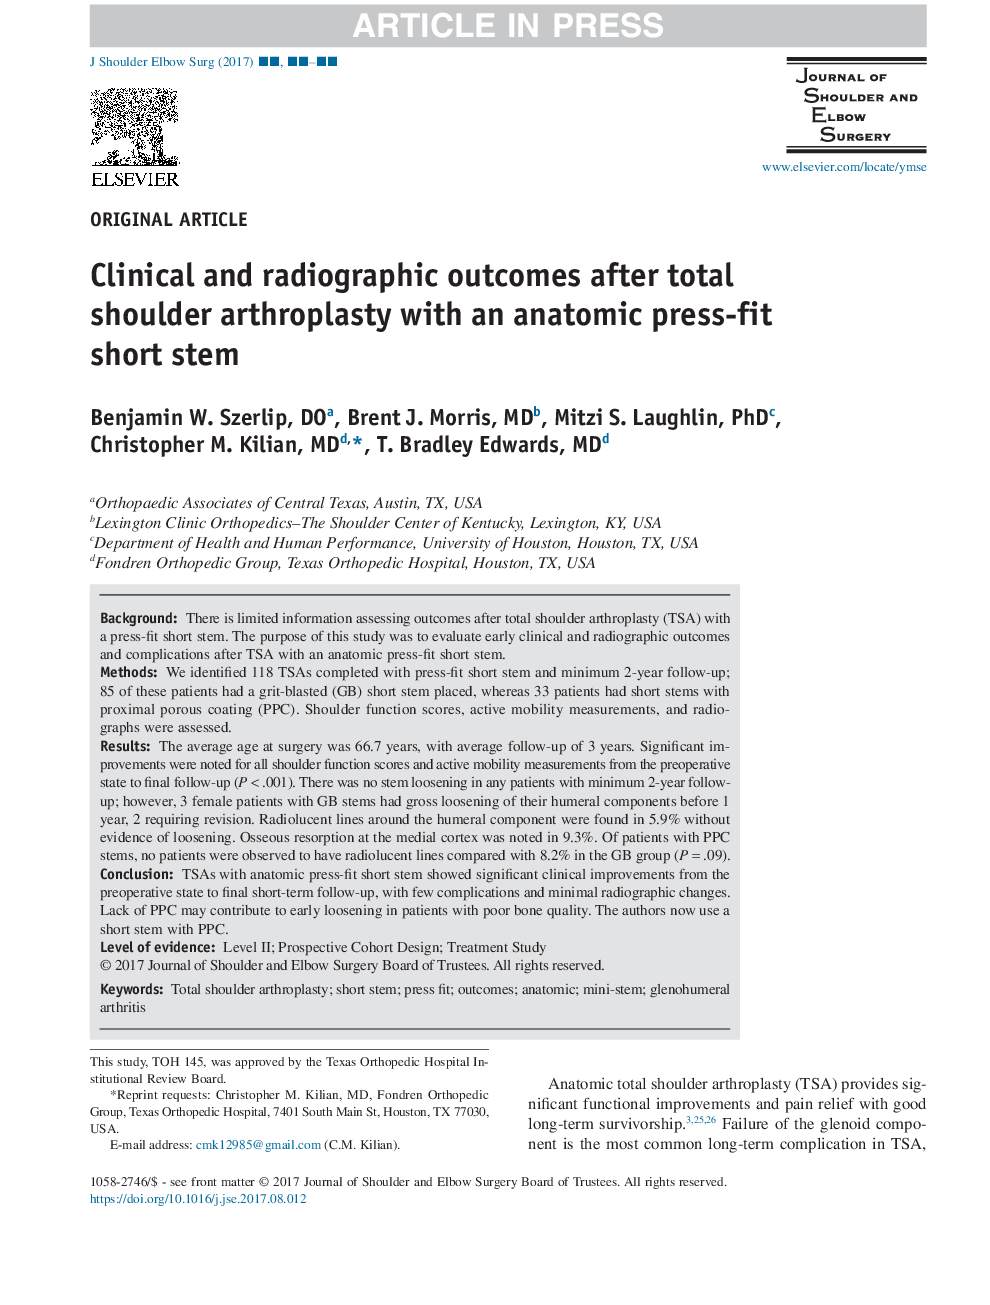 نتایج بالینی و رادیوگرافی پس از آرتروپلاستی کامل شانه با ساقه کوتاه آناتومی مطبوعات مناسب 